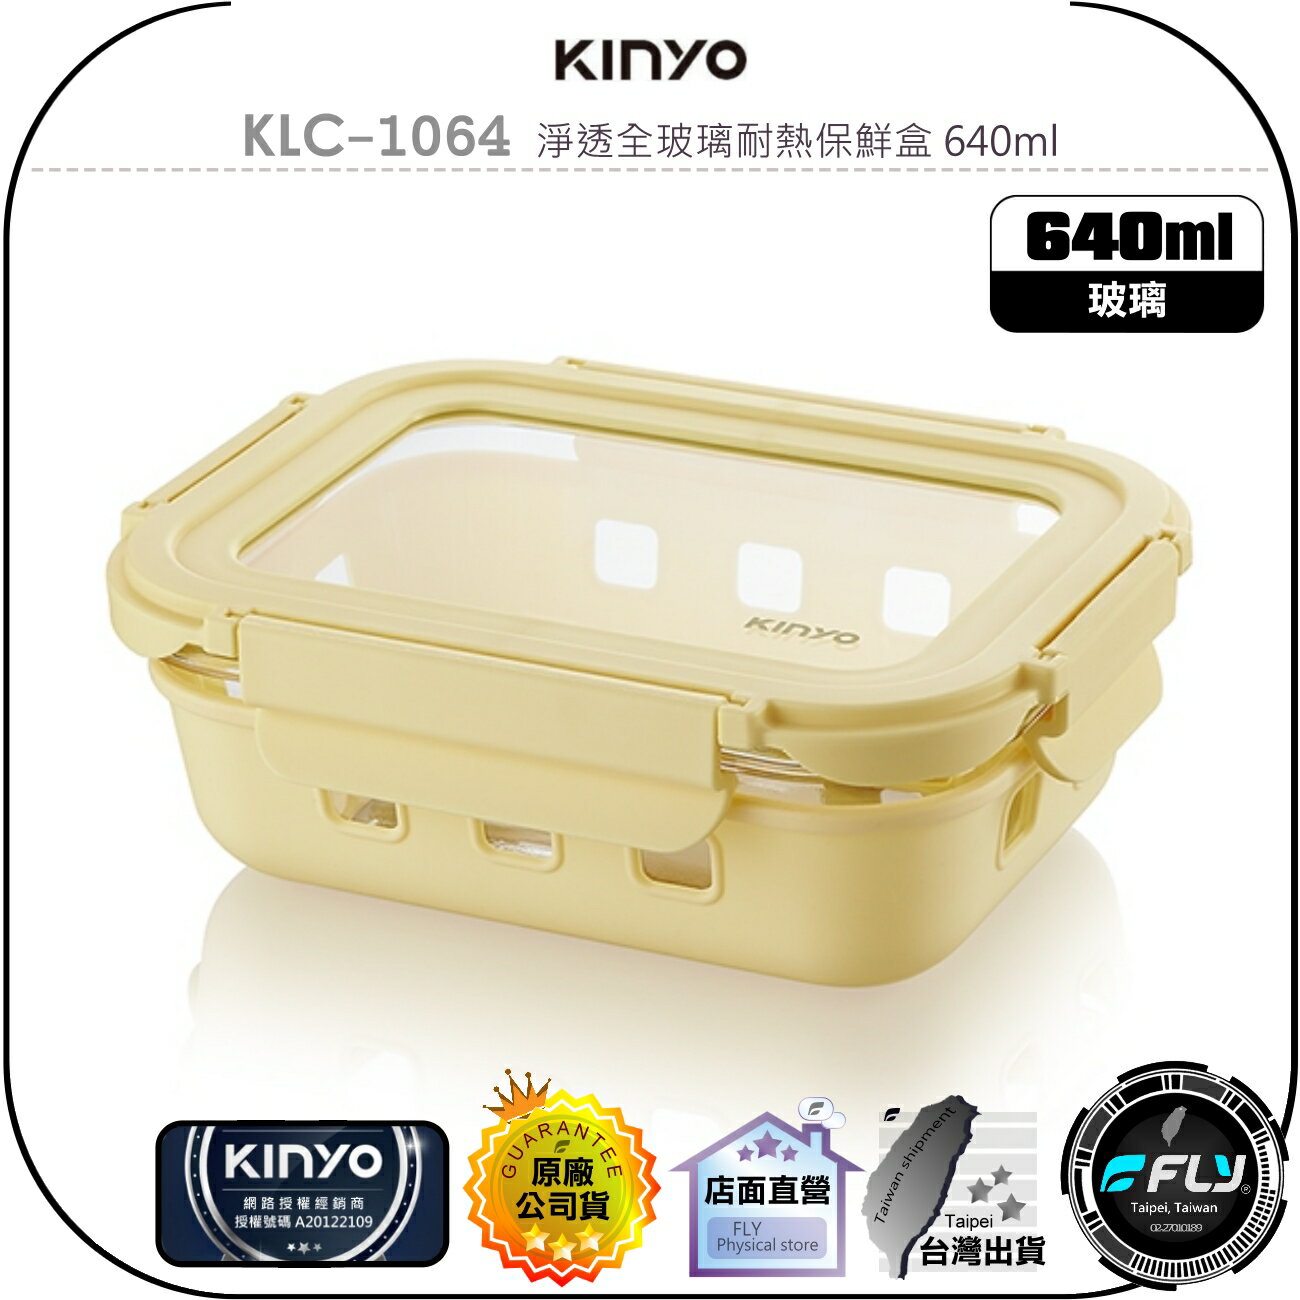 【飛翔商城】KINYO 耐嘉 KLC-1064 淨透全玻璃耐熱保鮮盒 640ml◉公司貨◉適用 微波爐 烤箱 電鍋